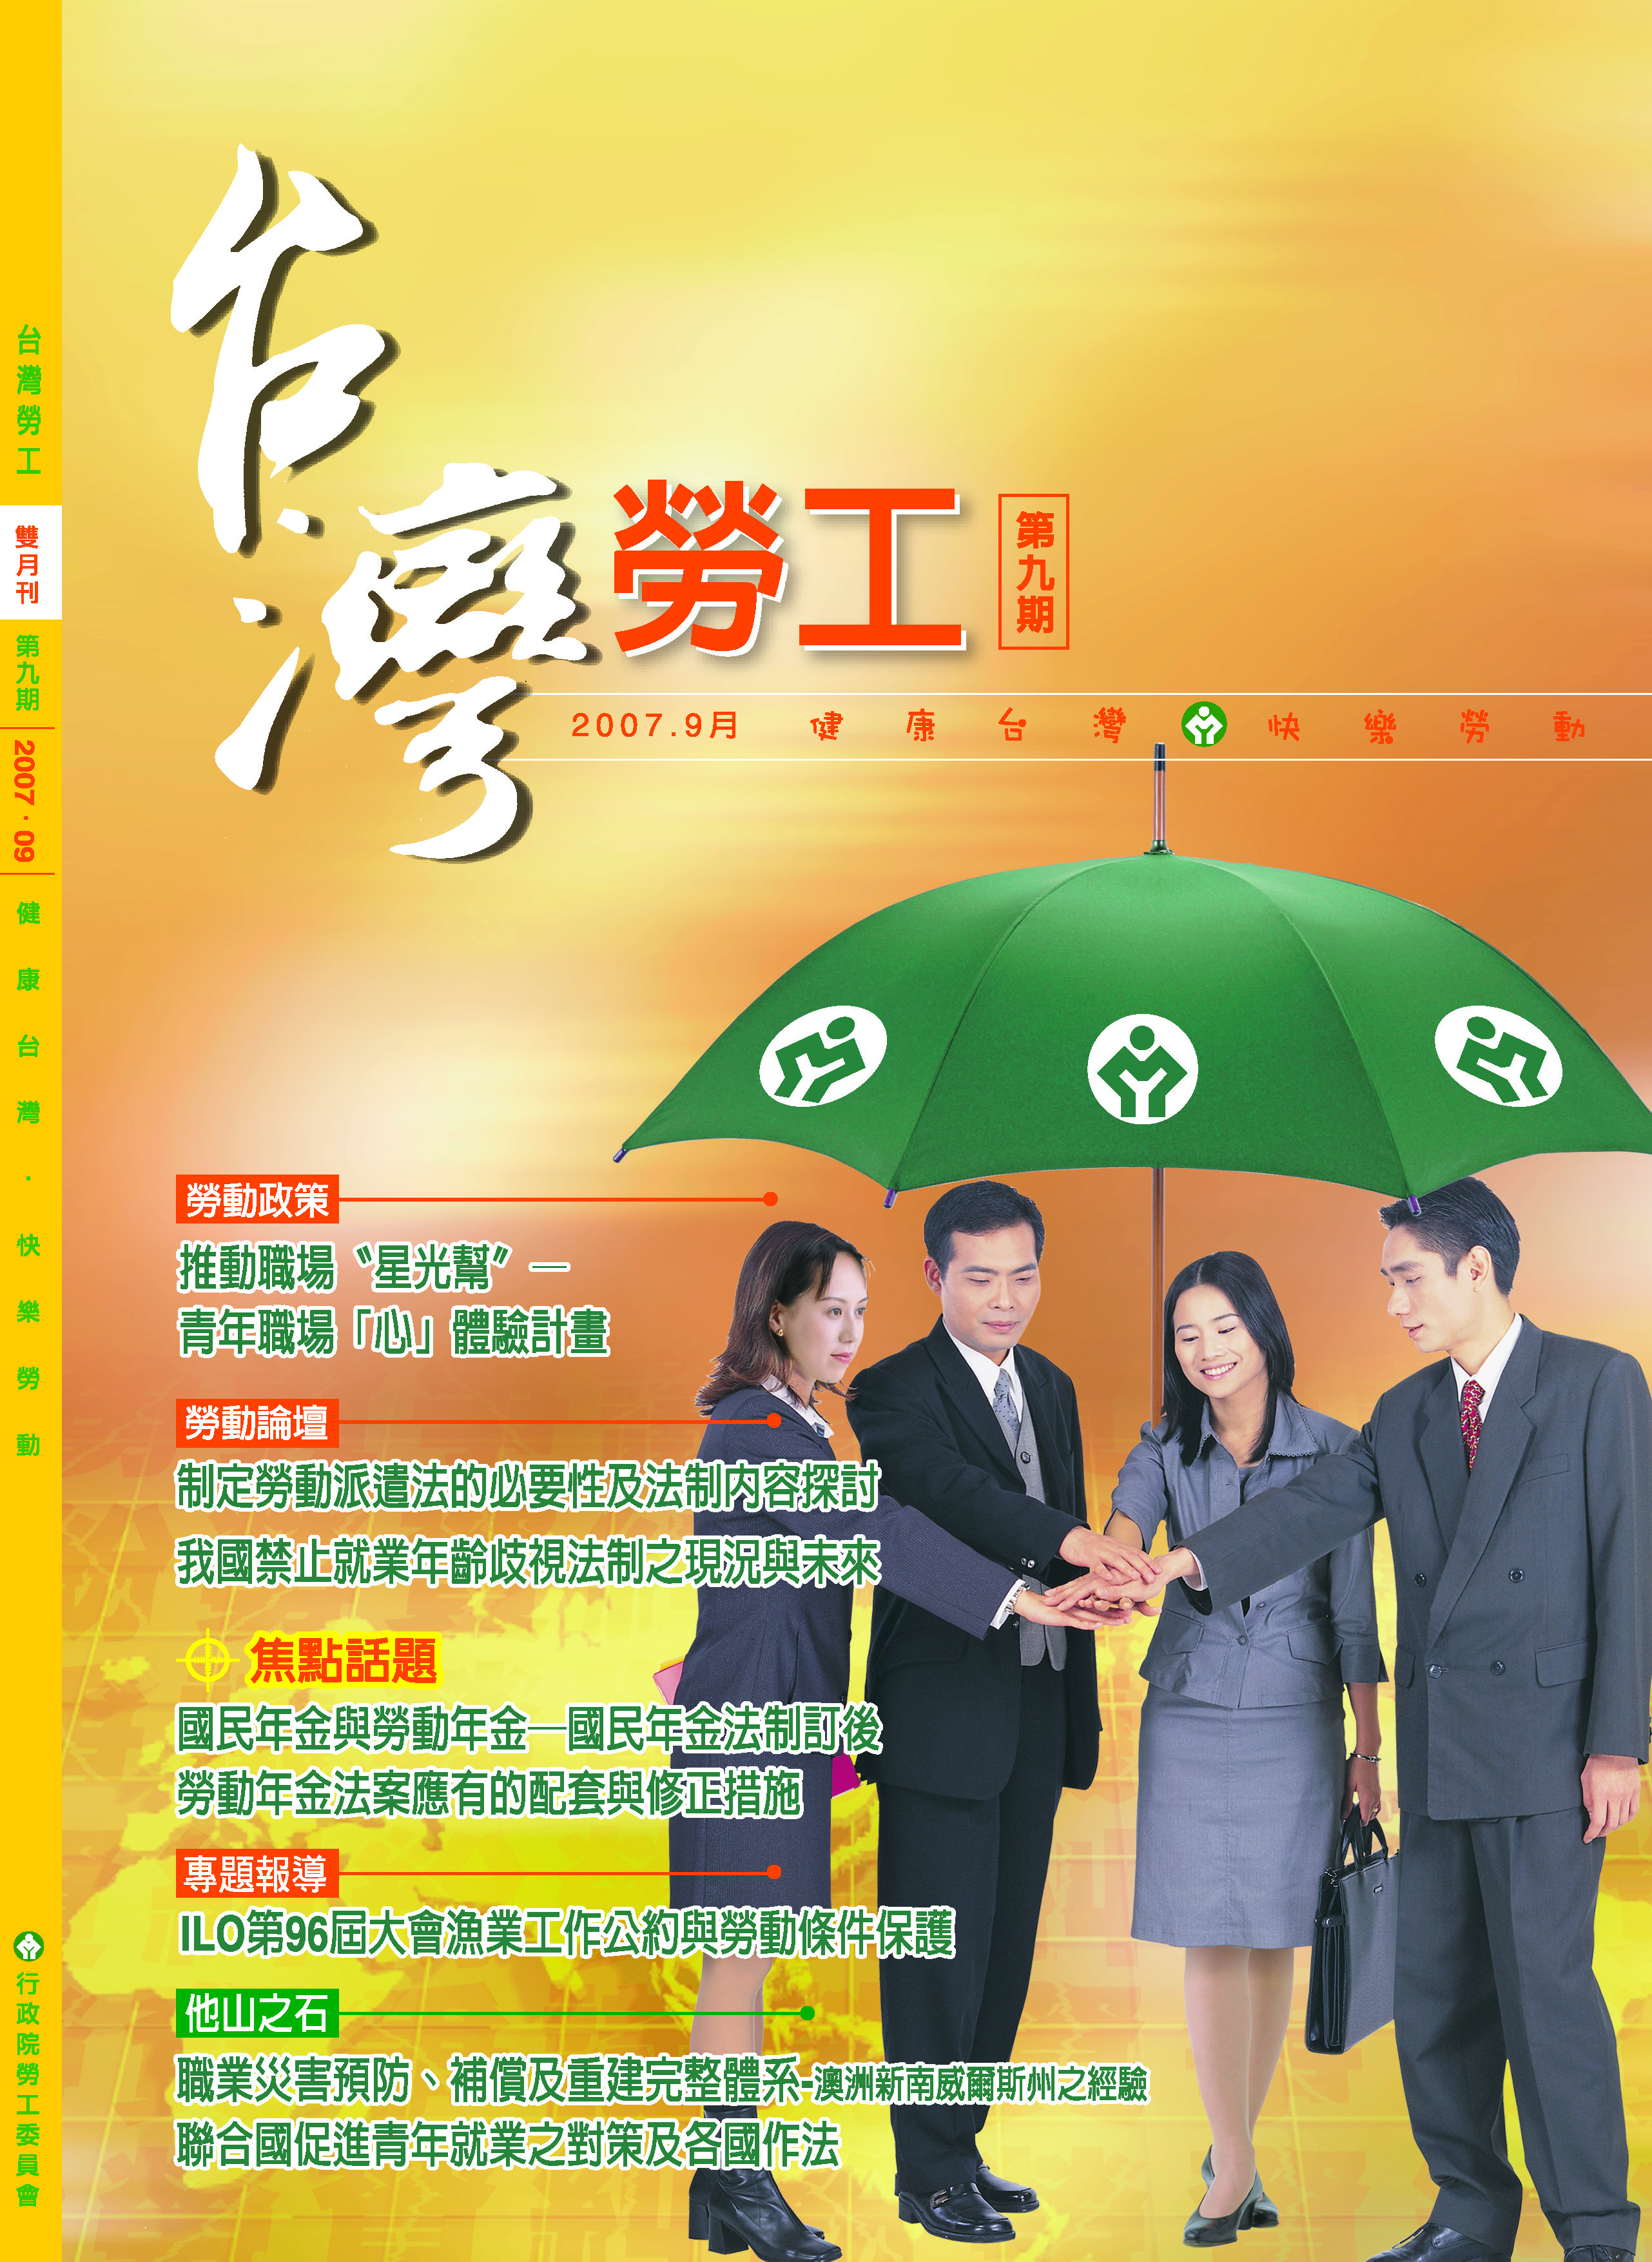 第09期-台灣勞工季刊 展示圖